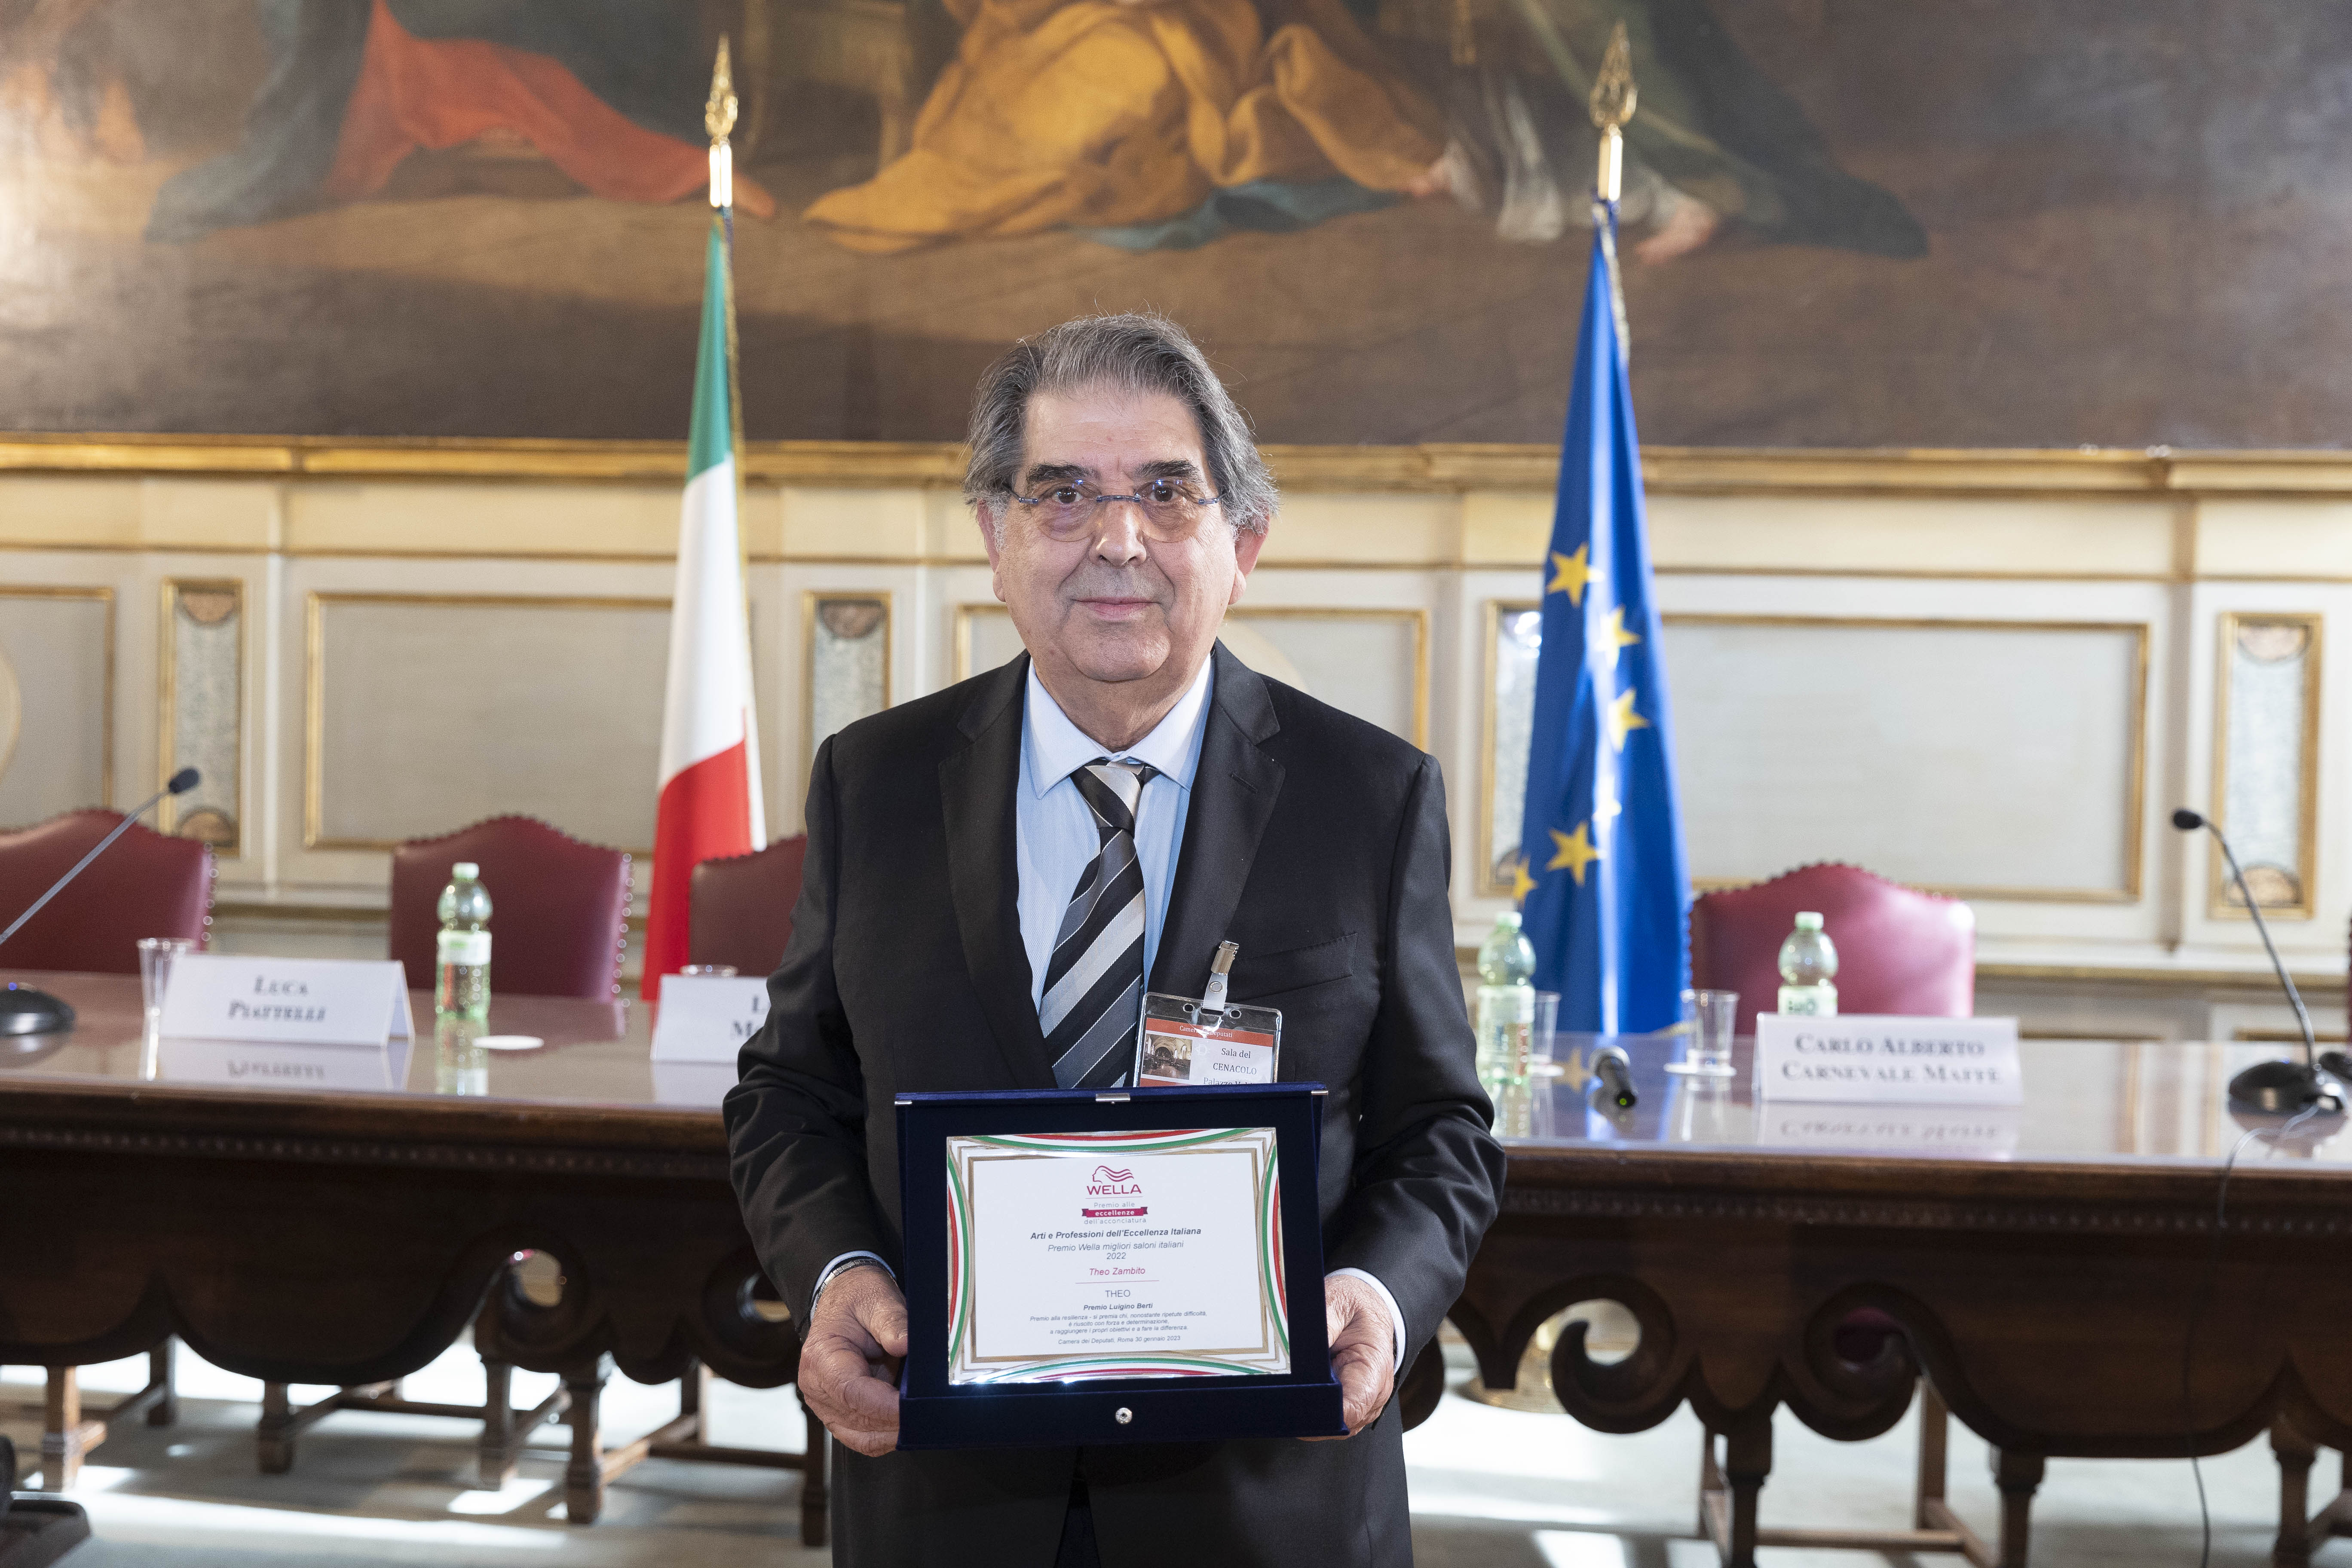 Theo Zambito premiato a Montecitorio durante la cerimonia “Arti e professioni dell’eccellenza italiana – Premio Wella ai migliori saloni italiani”